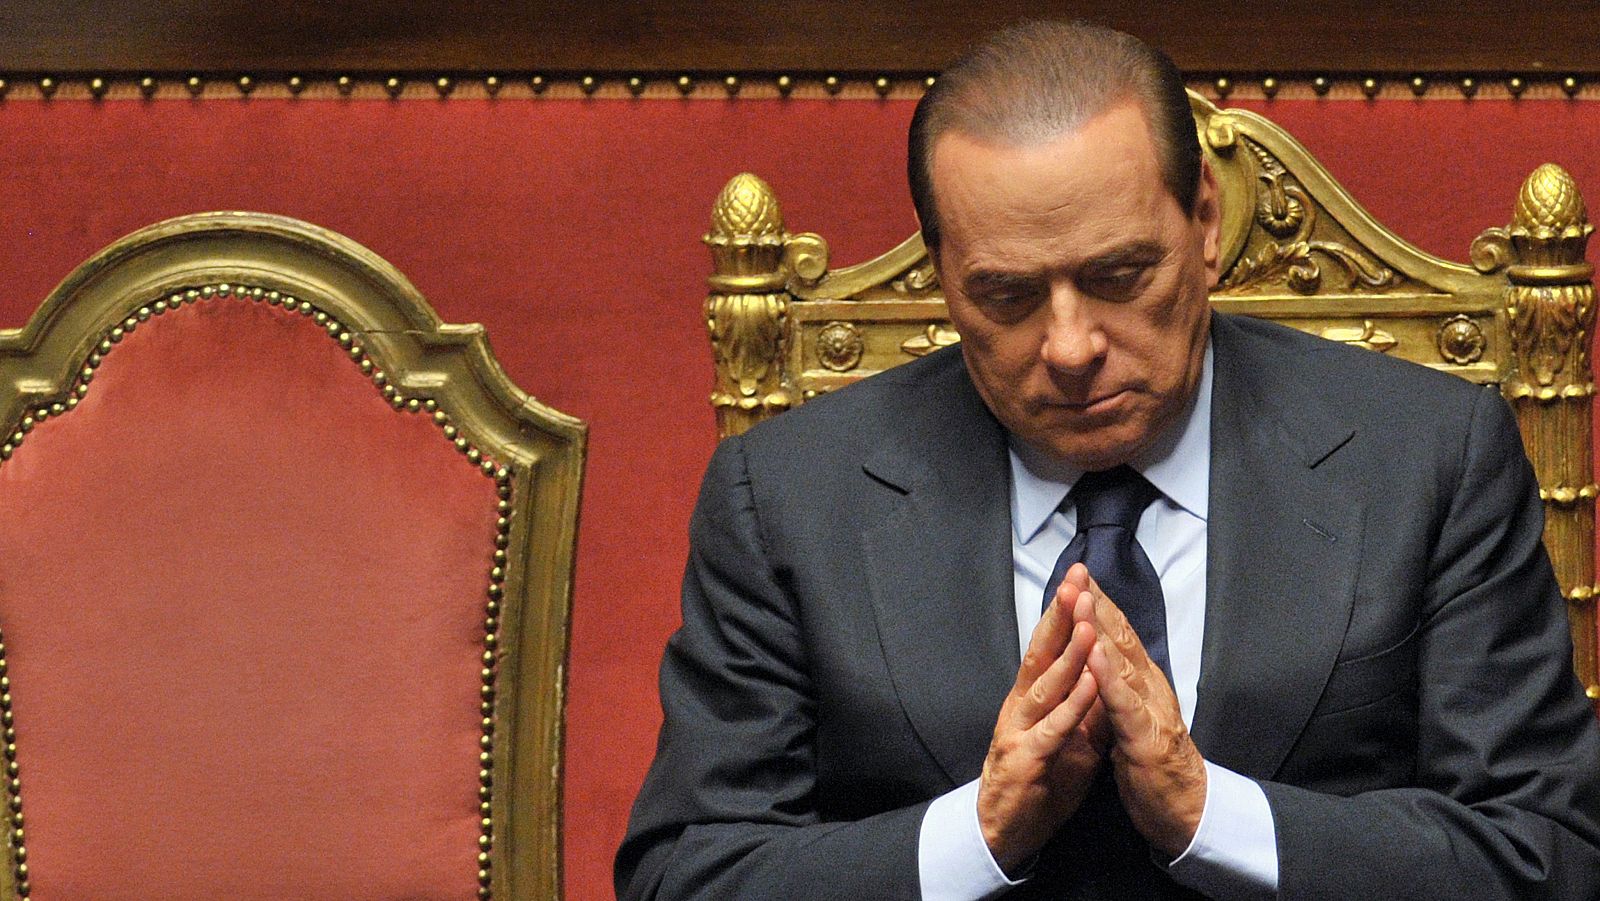 El ex primer ministro italiano no ha entrado en prisión por la ley de indultos y su elevada edad.